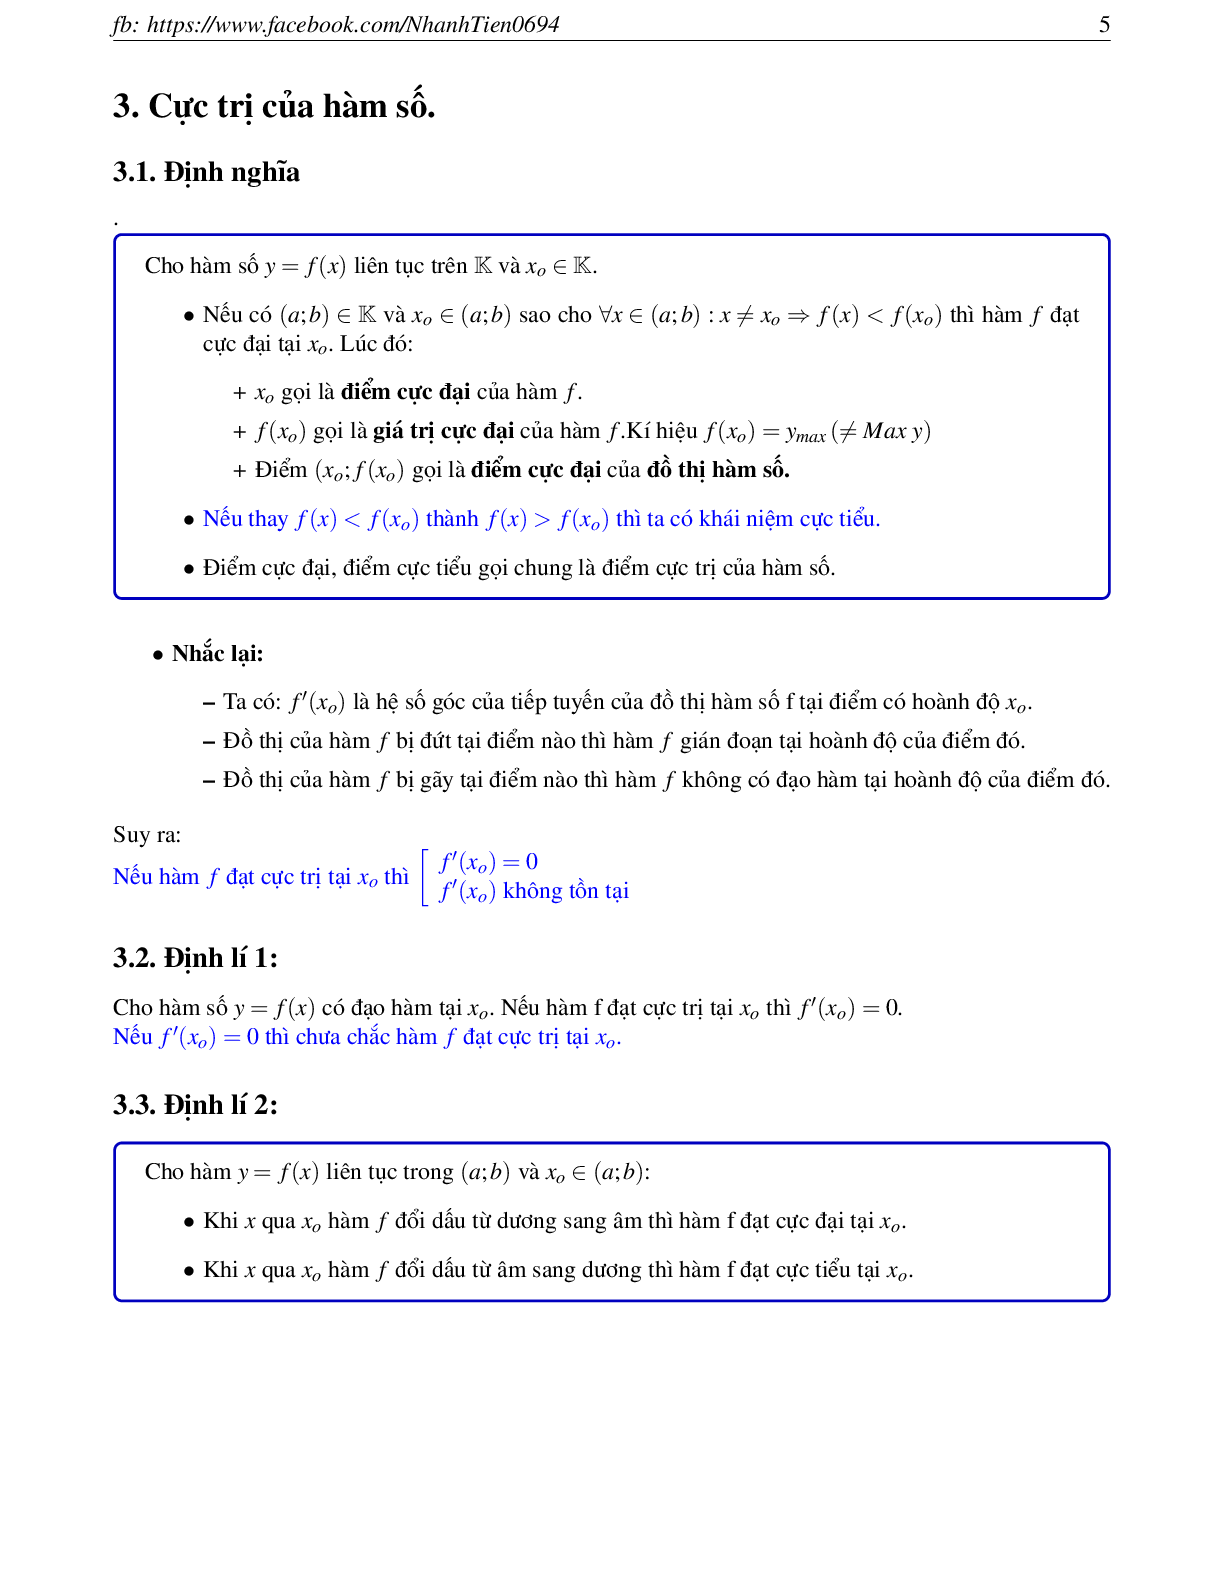 Phương pháp giải chuyên đề Hàm số 2023 (lý thuyết và bài tập) (trang 5)